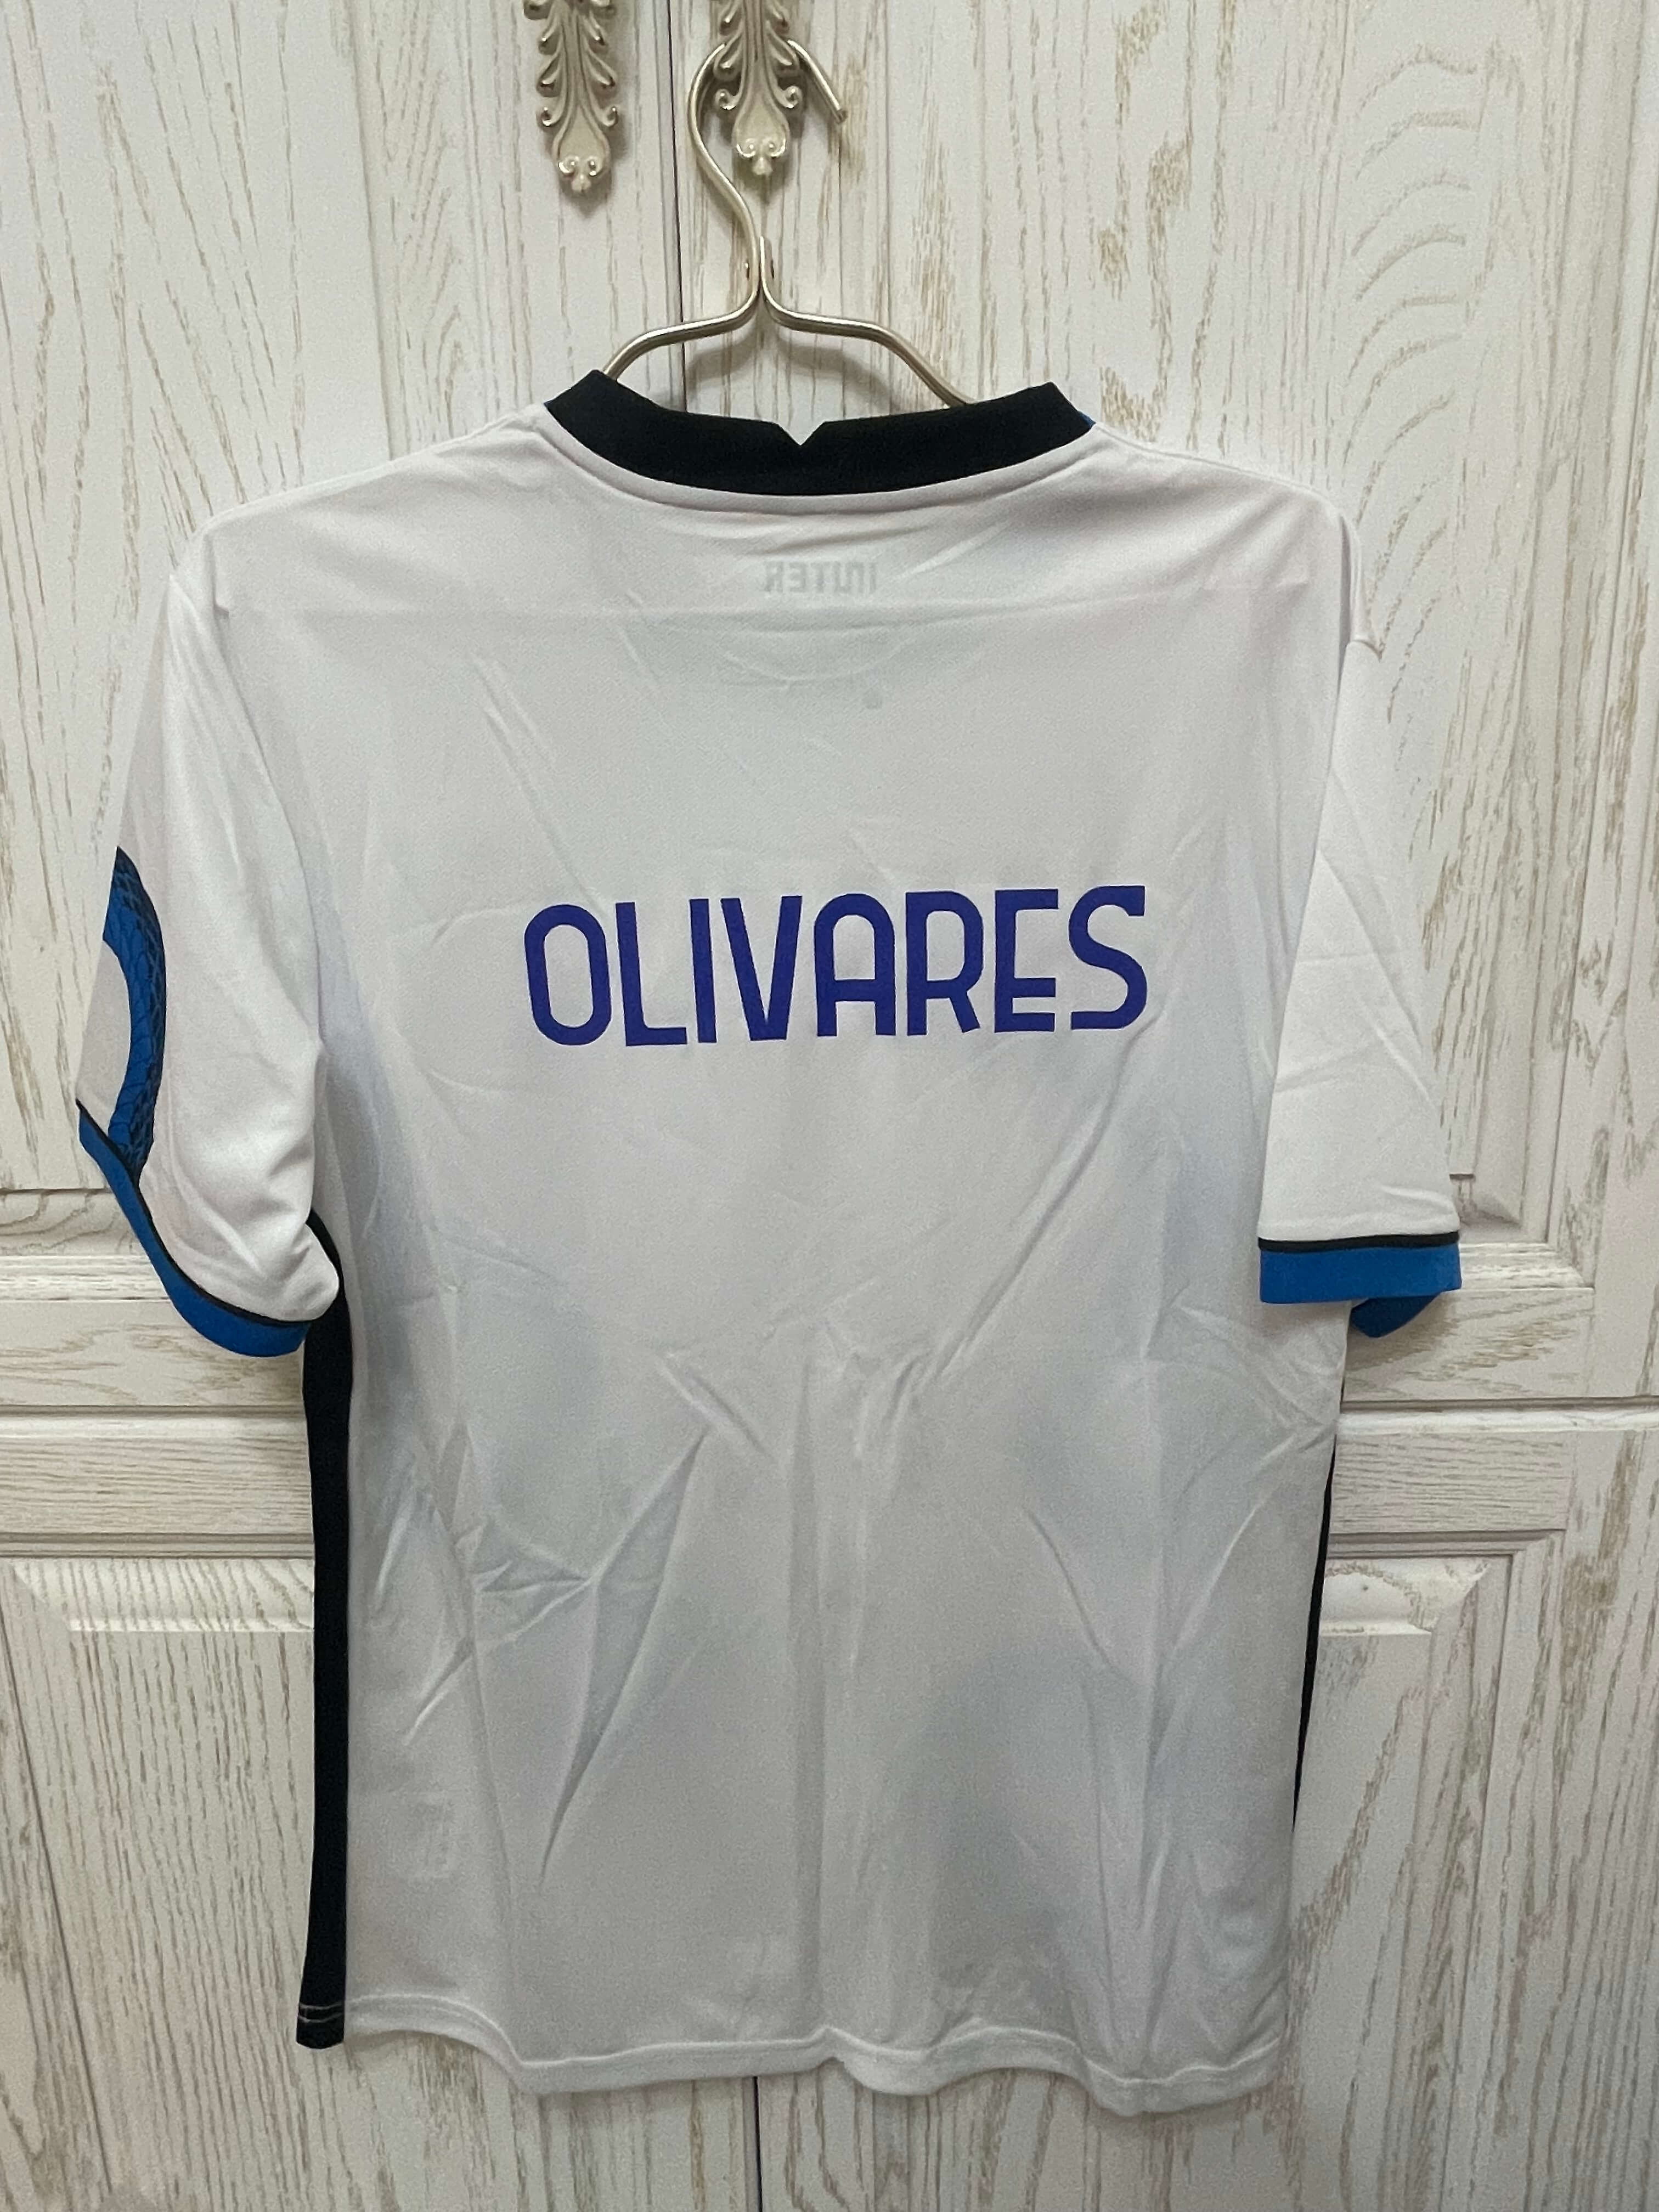 Camisetas De Fútbol Baratas - Talla S - 108 [Bratas0108] - €9.90 